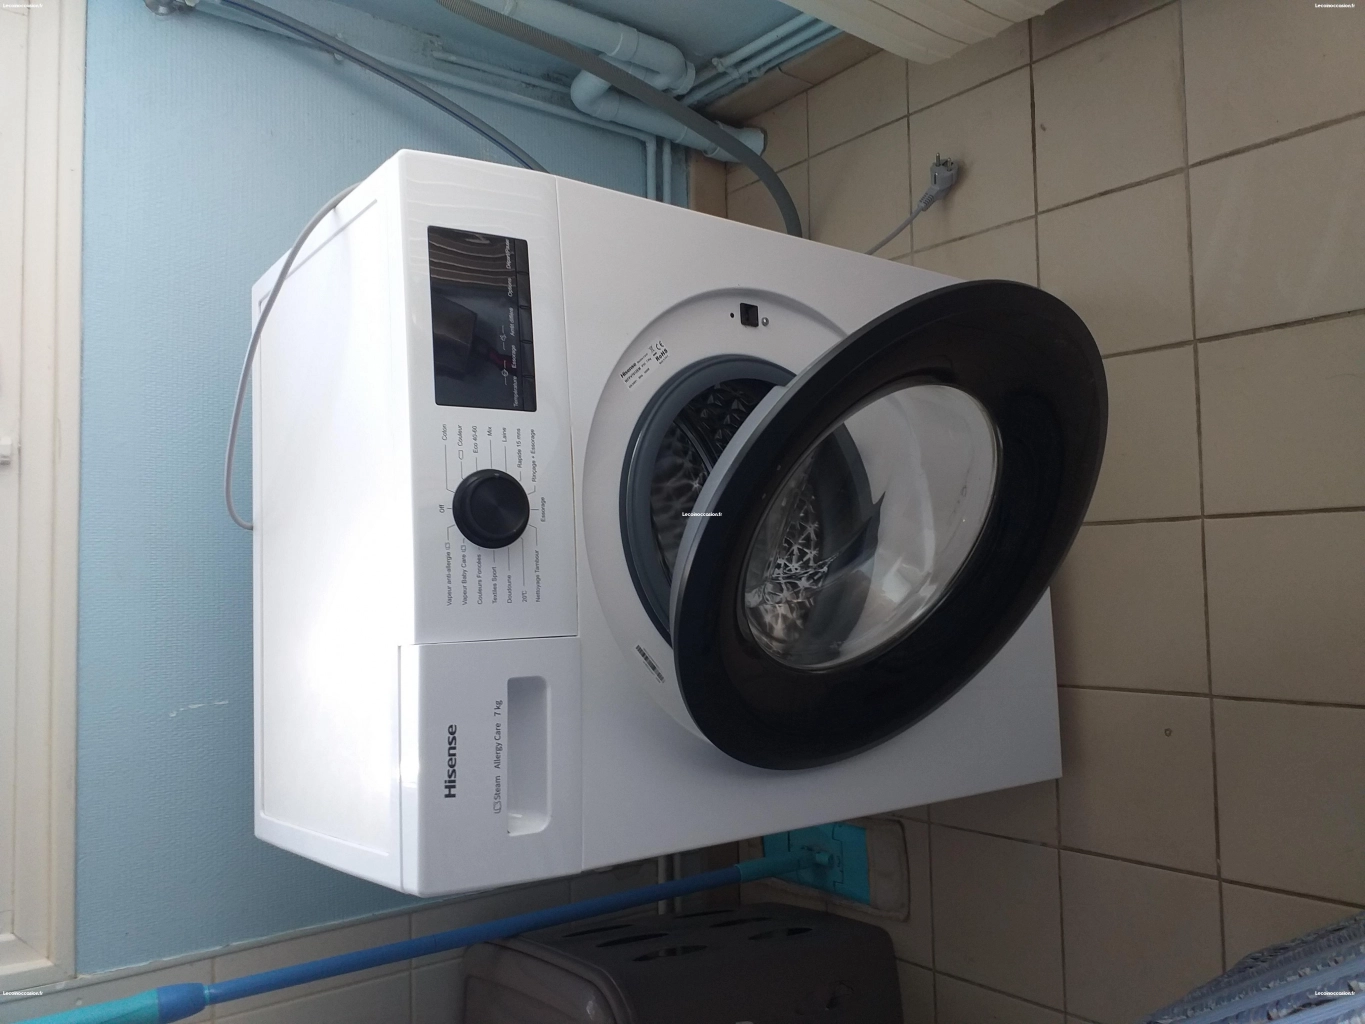 Vente machine à laver hublot